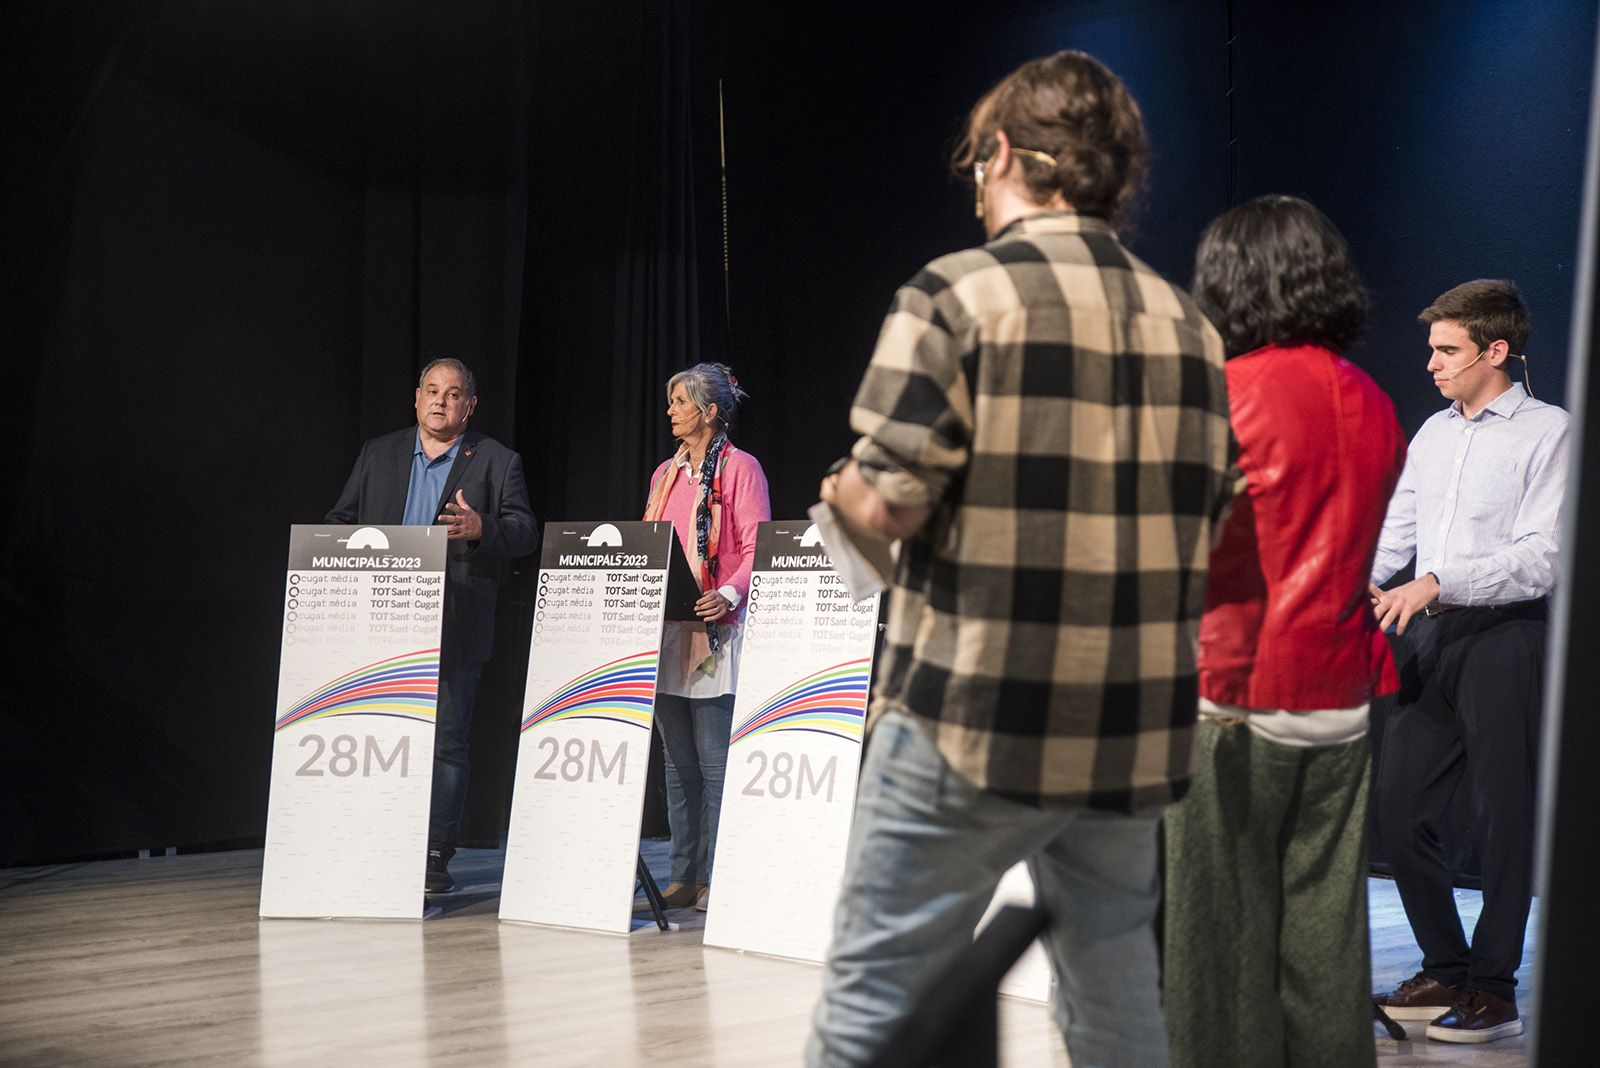 Debat de candidats de Valldoreix. FOTO: Bernat Millet.